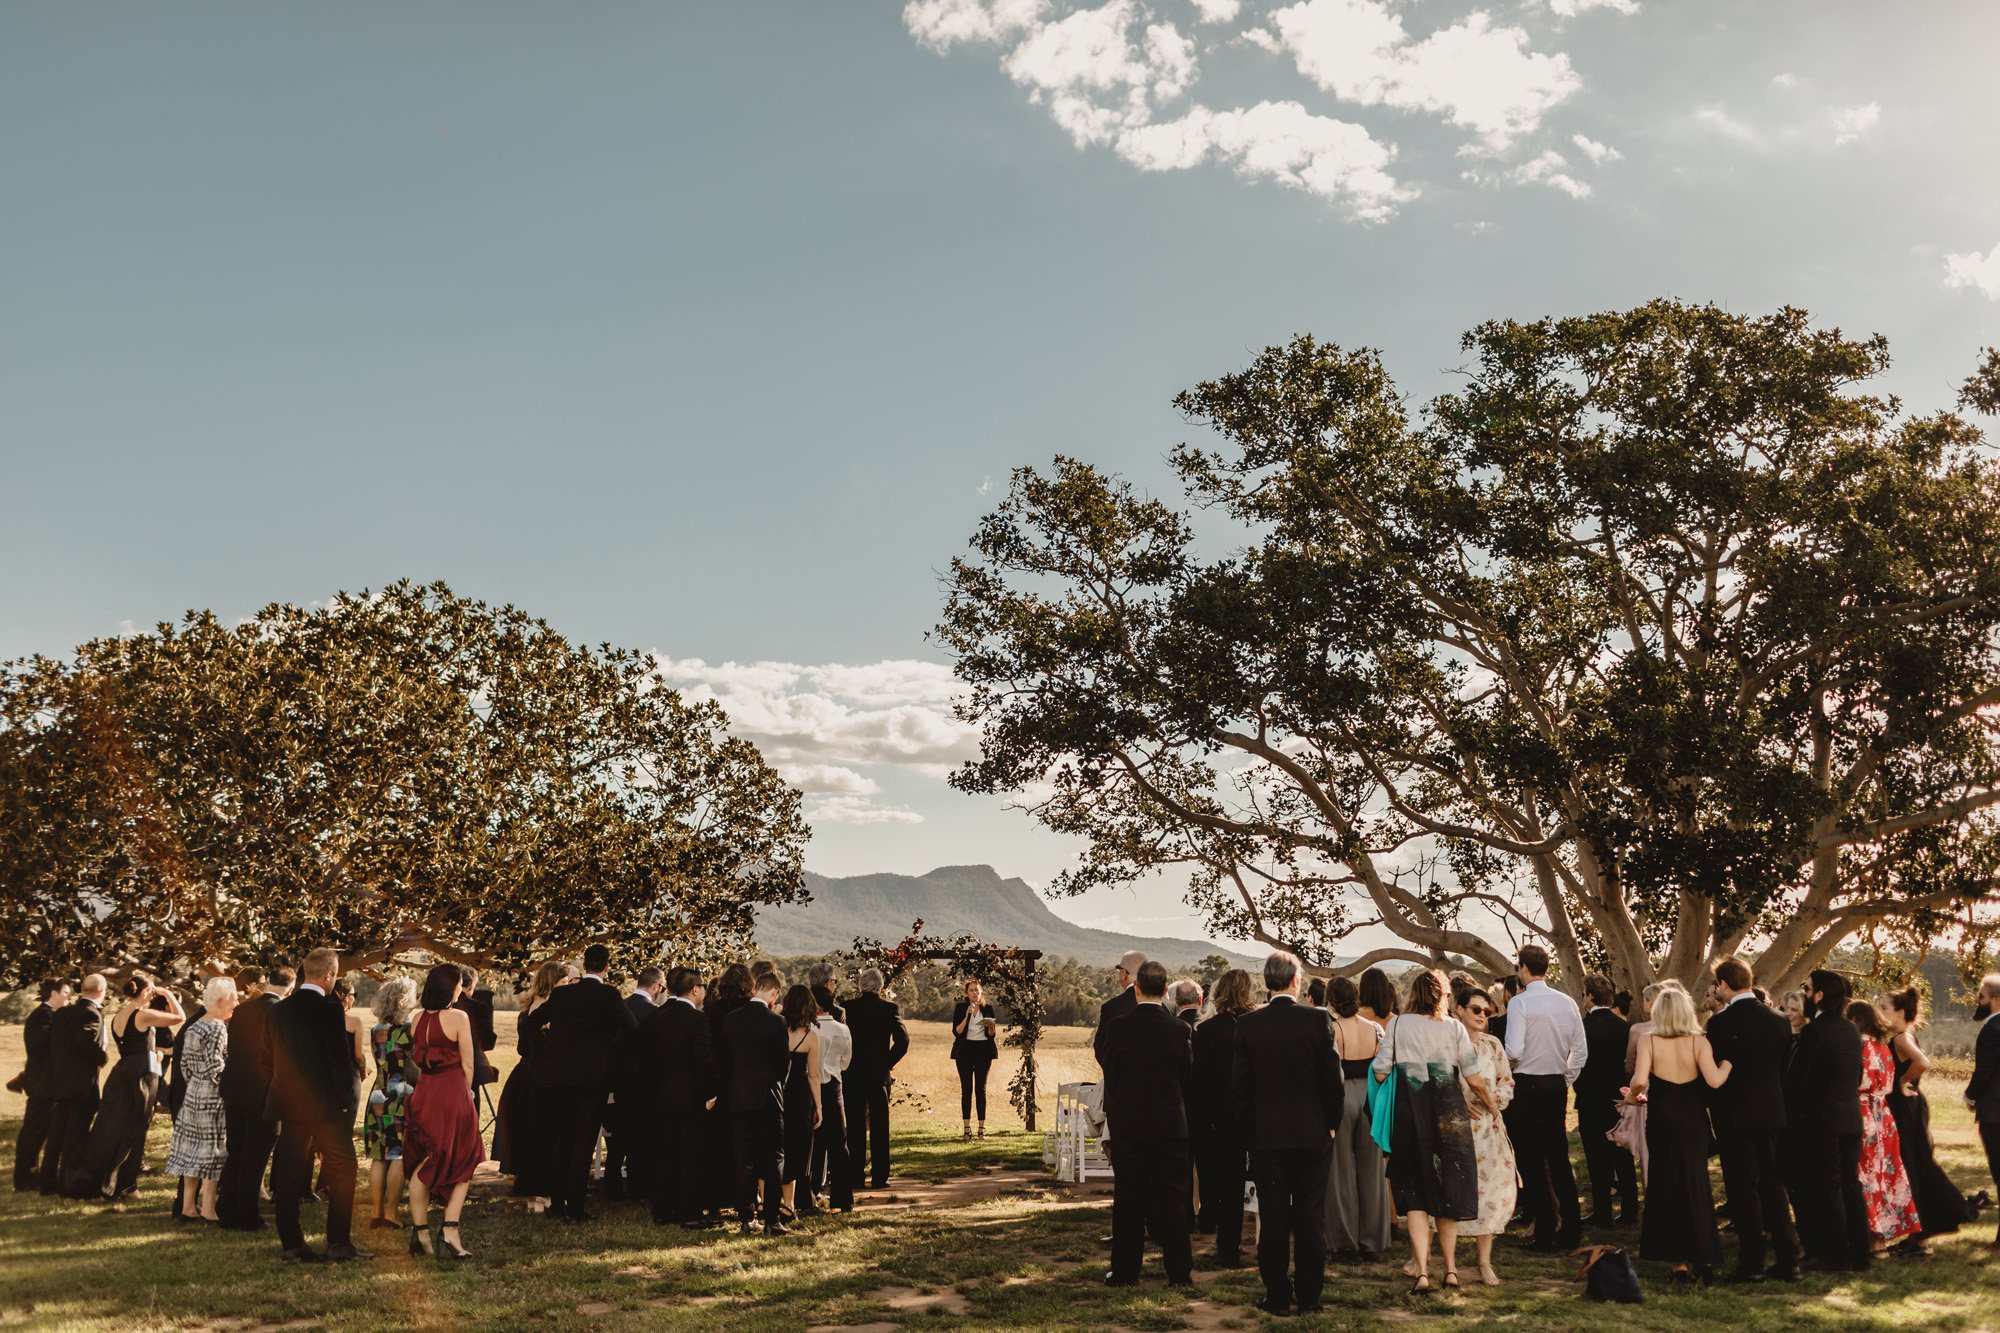 outdoor wedding ceremony at bimbadgen palmers lane wedding 